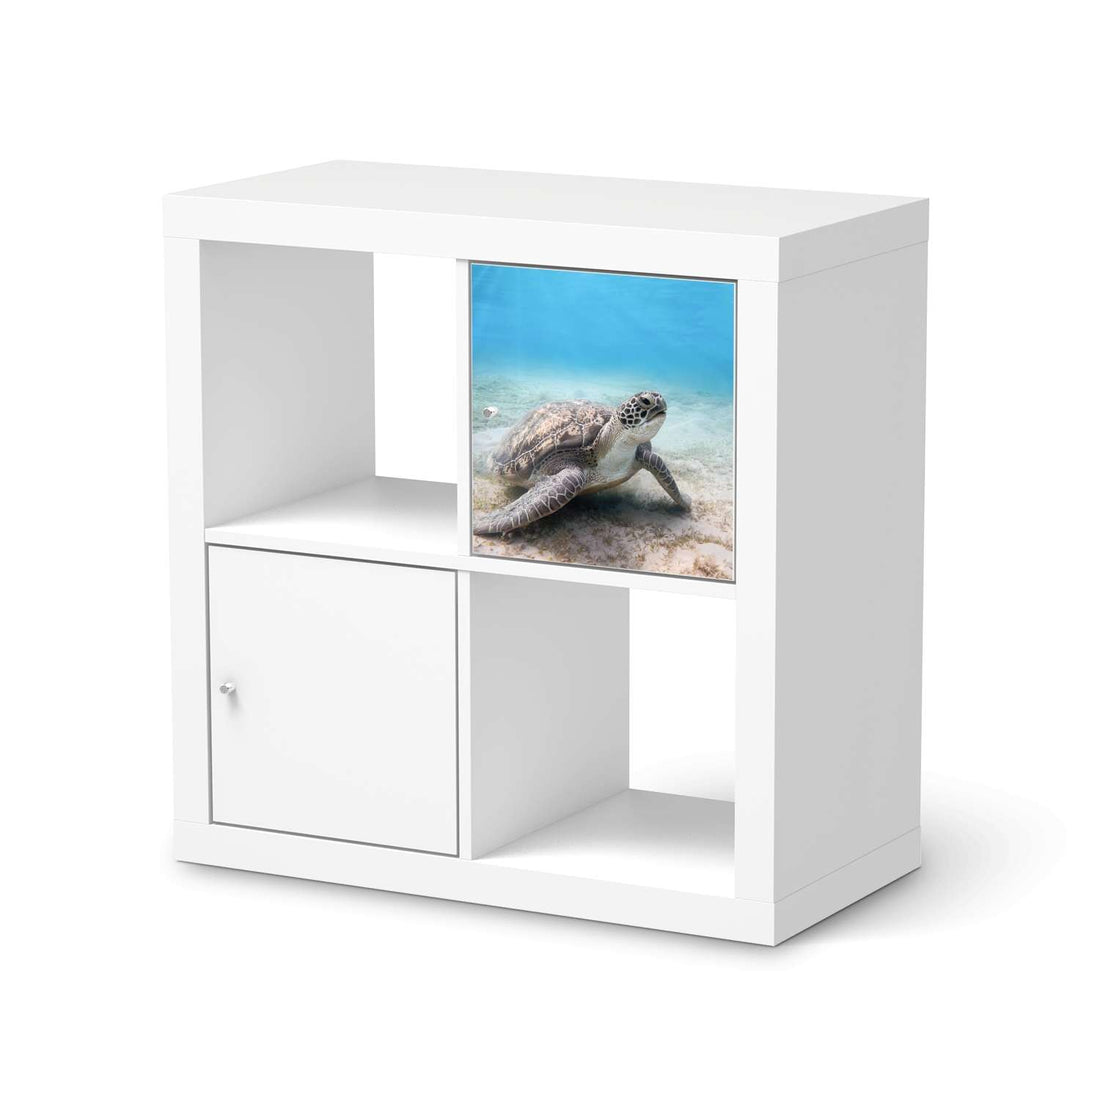 Selbstklebende Folie Green Sea Turtle - IKEA Kallax Regal 1 Türe  - weiss